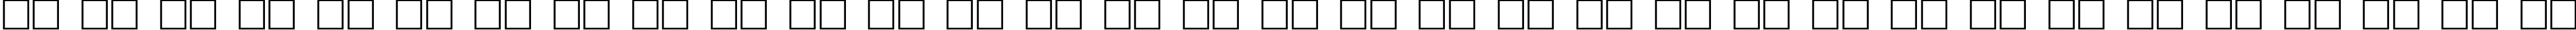 Пример написания русского алфавита шрифтом Grids n Things